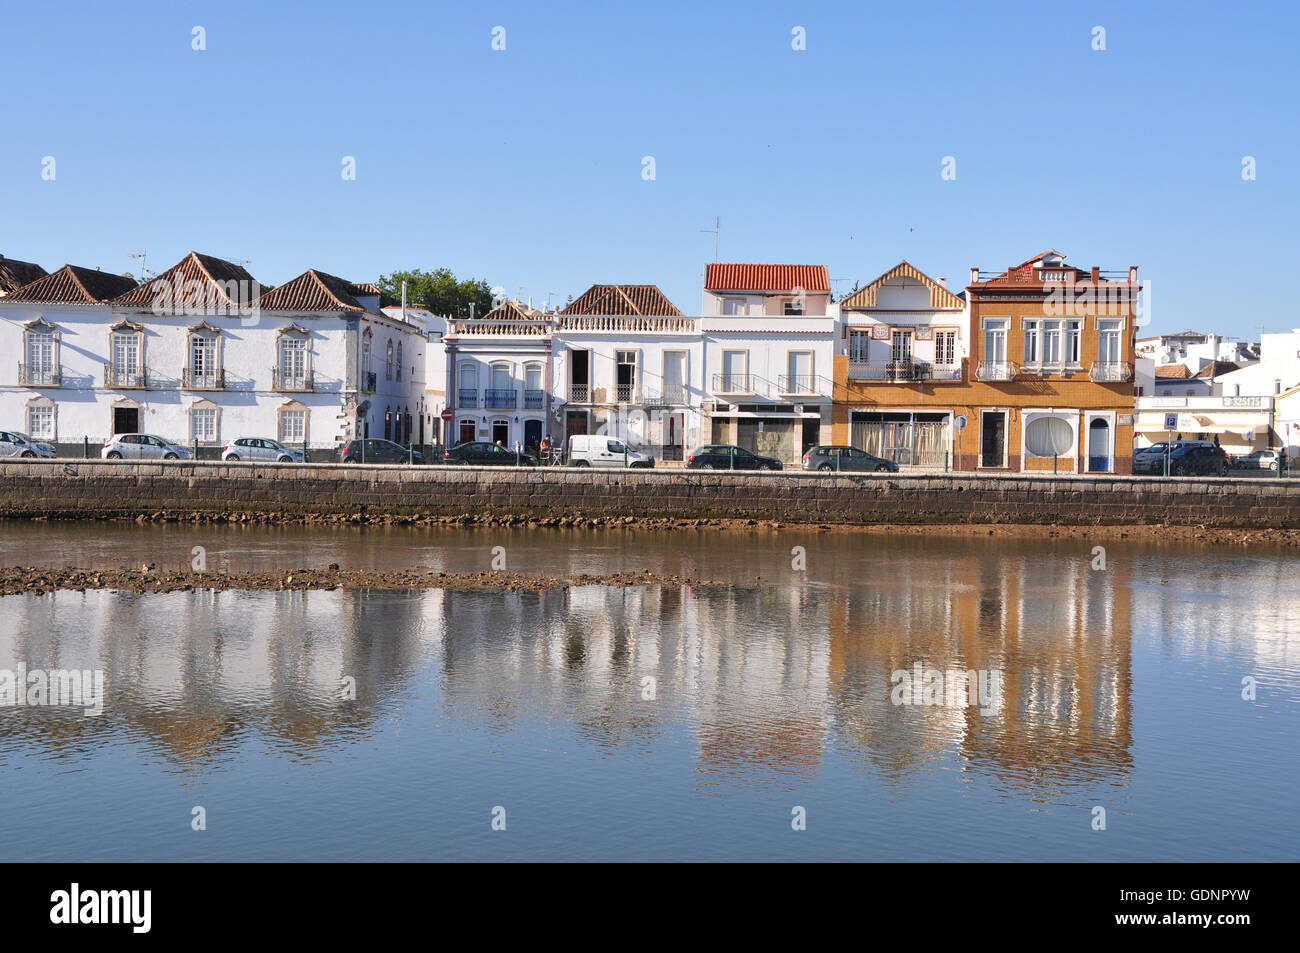 L'architecture portugaise waterfront reflétée sur l'eau sur l'après-midi chaud et ensoleillé avec un ciel bleu à Tavira, près de Faro en Algarve Région du Portugal. Banque D'Images